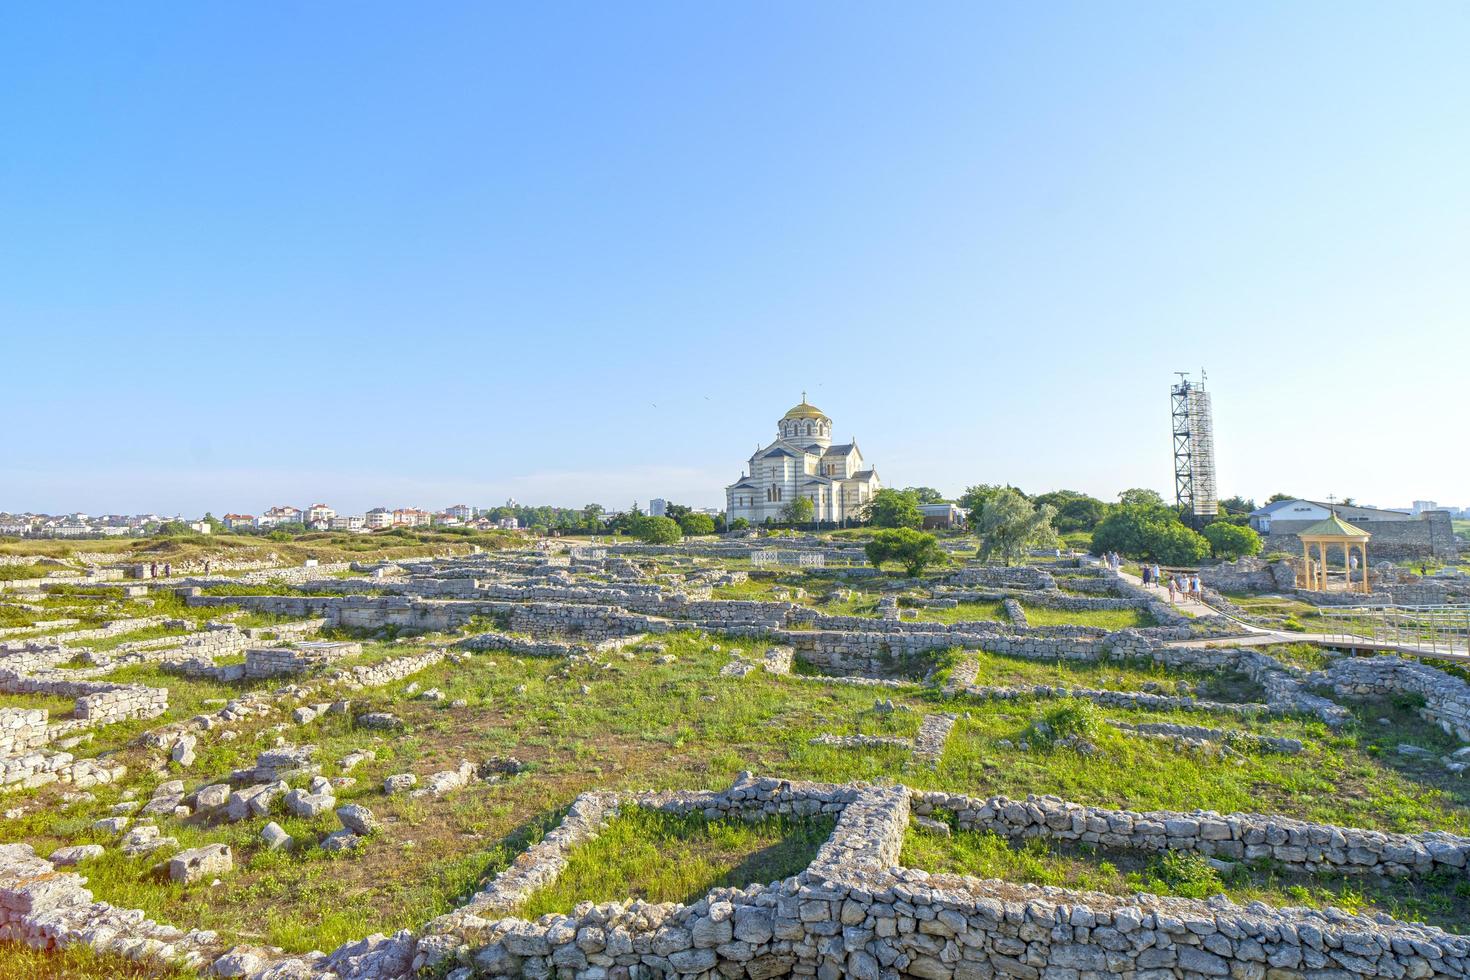 st. la cattedrale di vladimir a chersonesos, sebastopoli foto